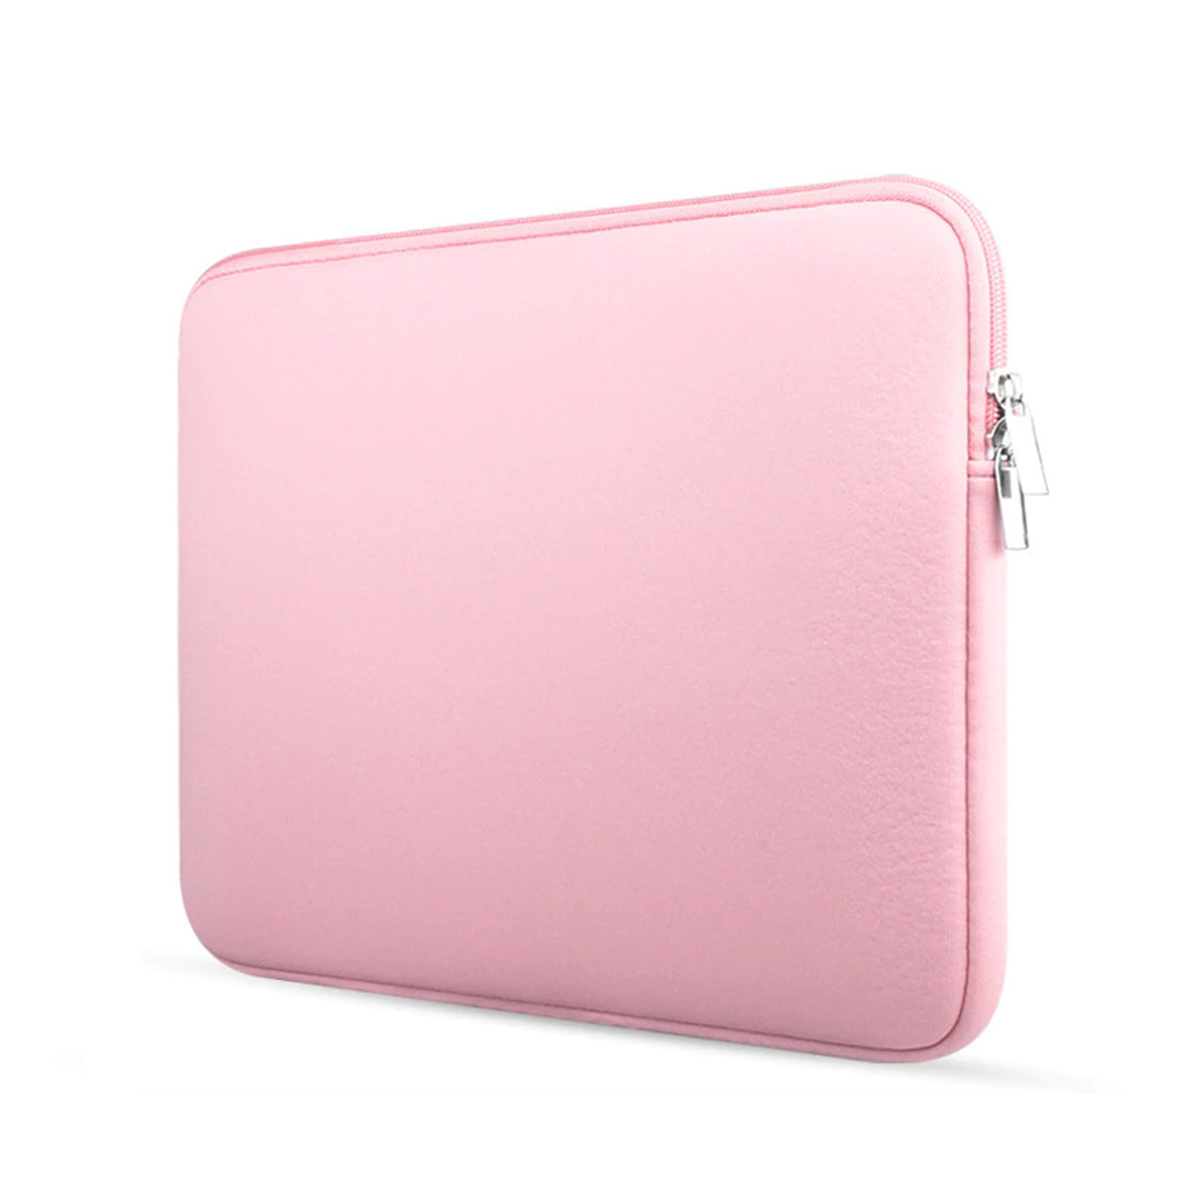 Trouw Kenmerkend beginnen Laptop en Macbook Sleeve - 15.4 inch - Roze | Case2go.nl